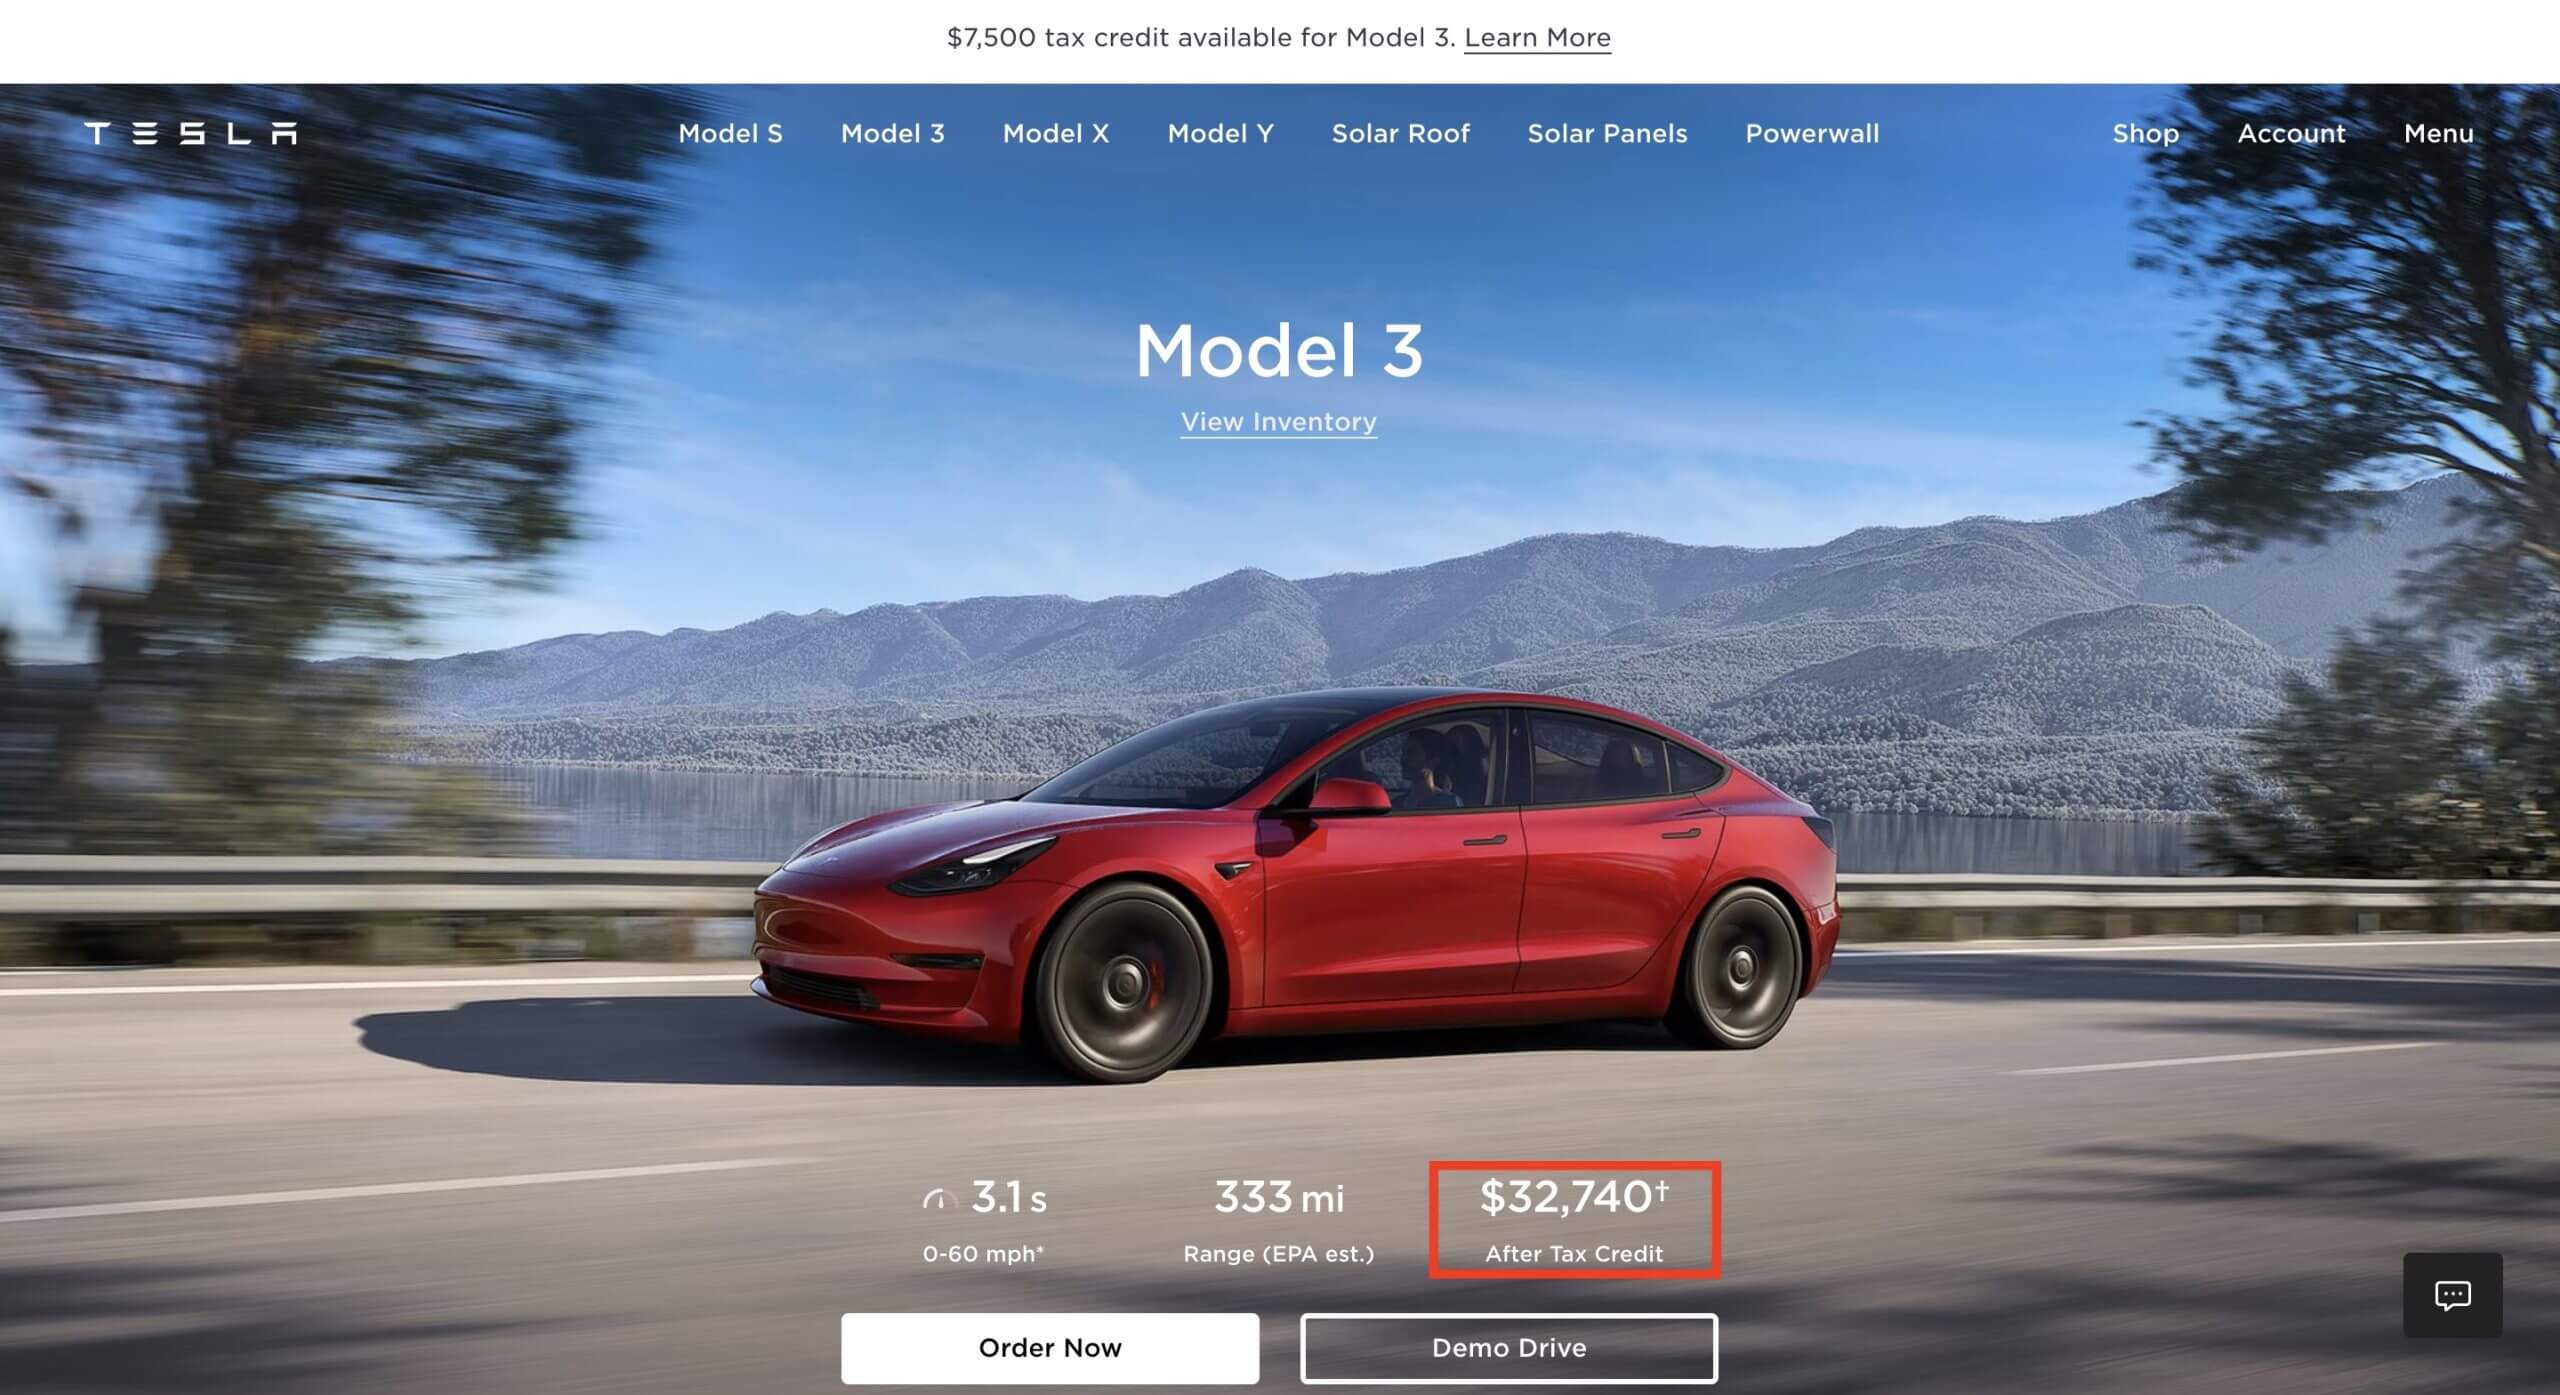 Tesla beginnt mit der Förderung der IRA-bereinigten Preise für Model 3 und Model Y